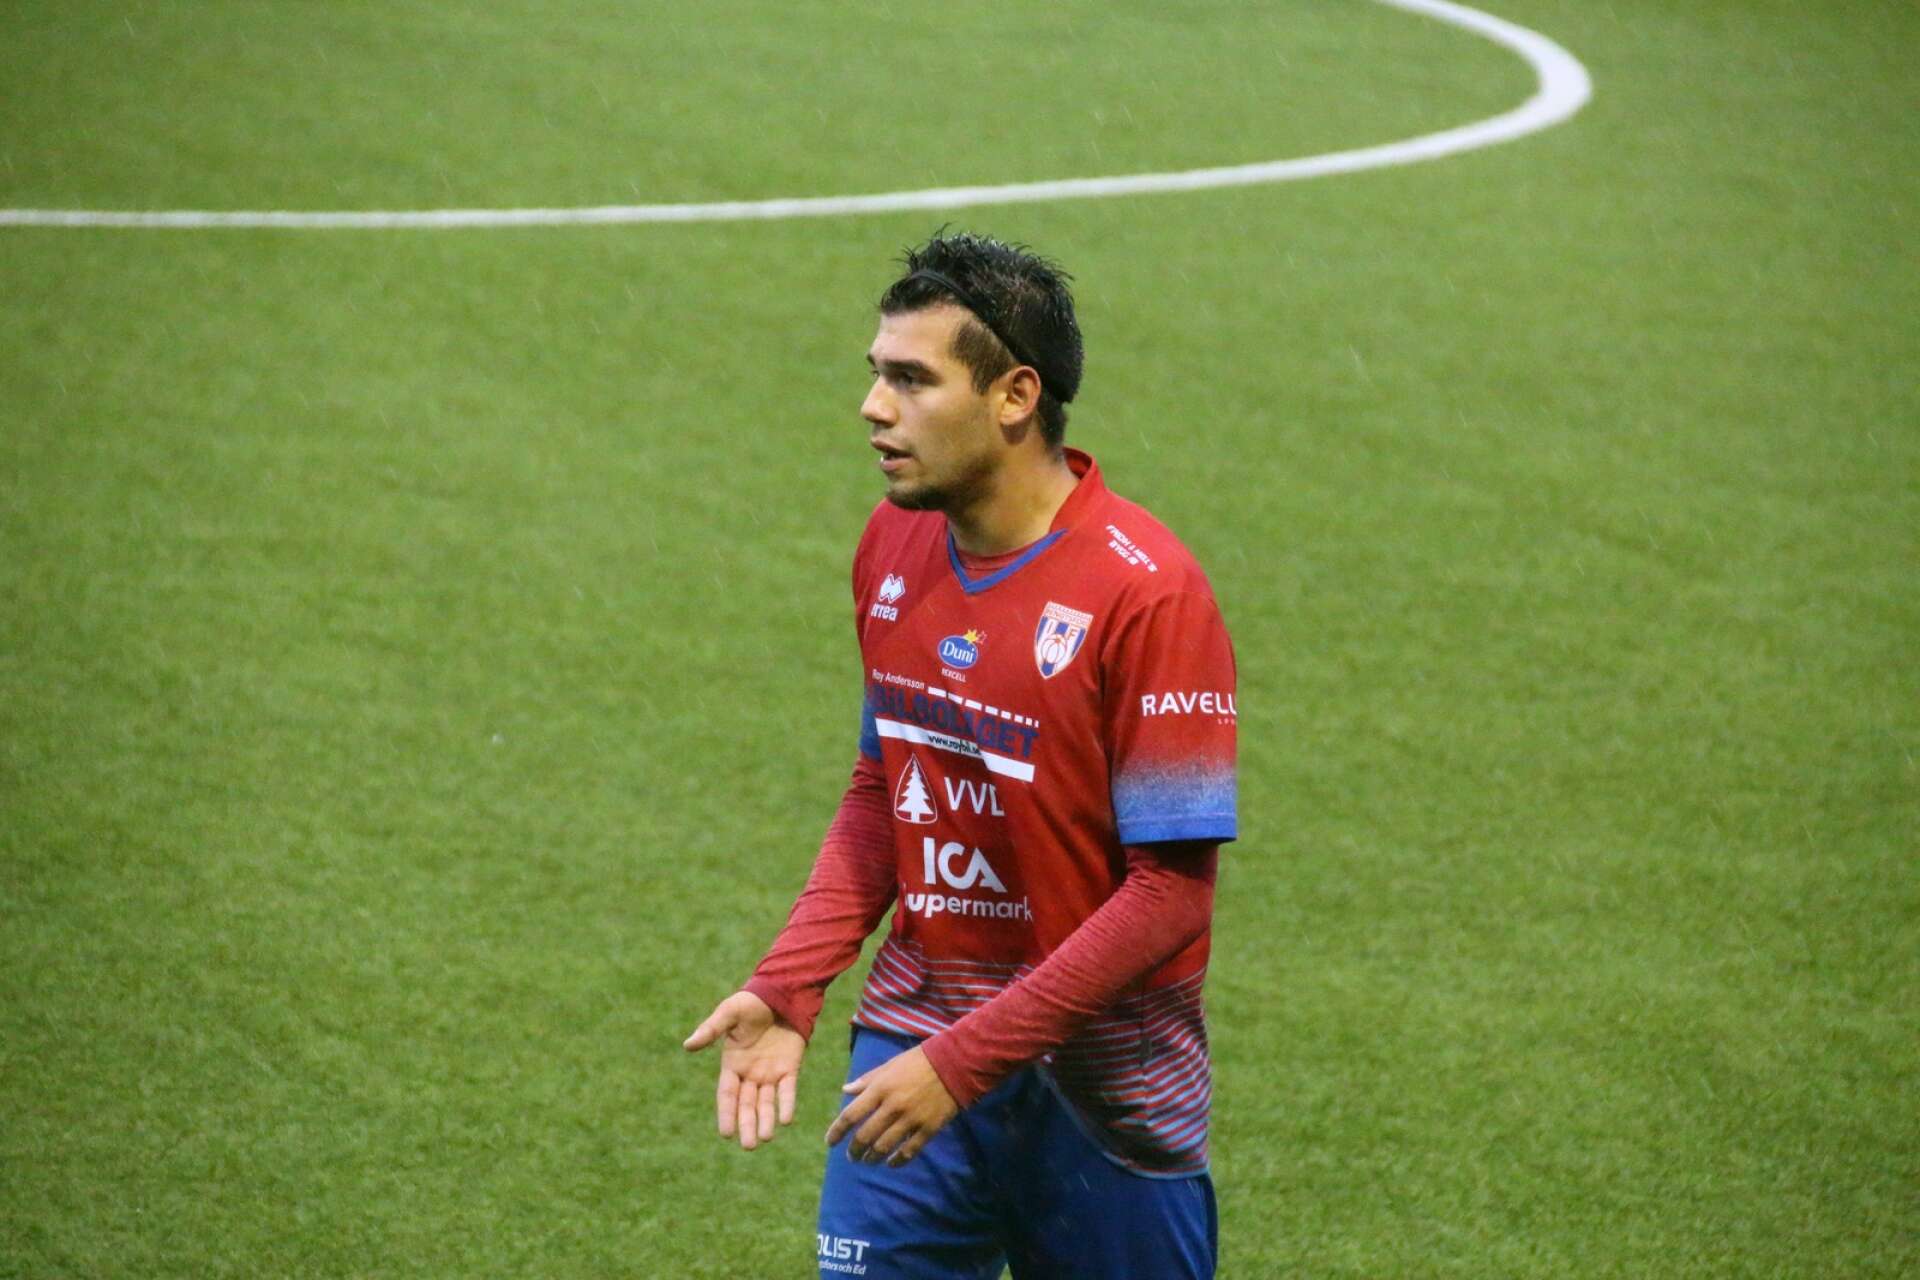 Dylan Diaz spelade i matchen och gjorde mål, trots att han inte stod med i startelvan.